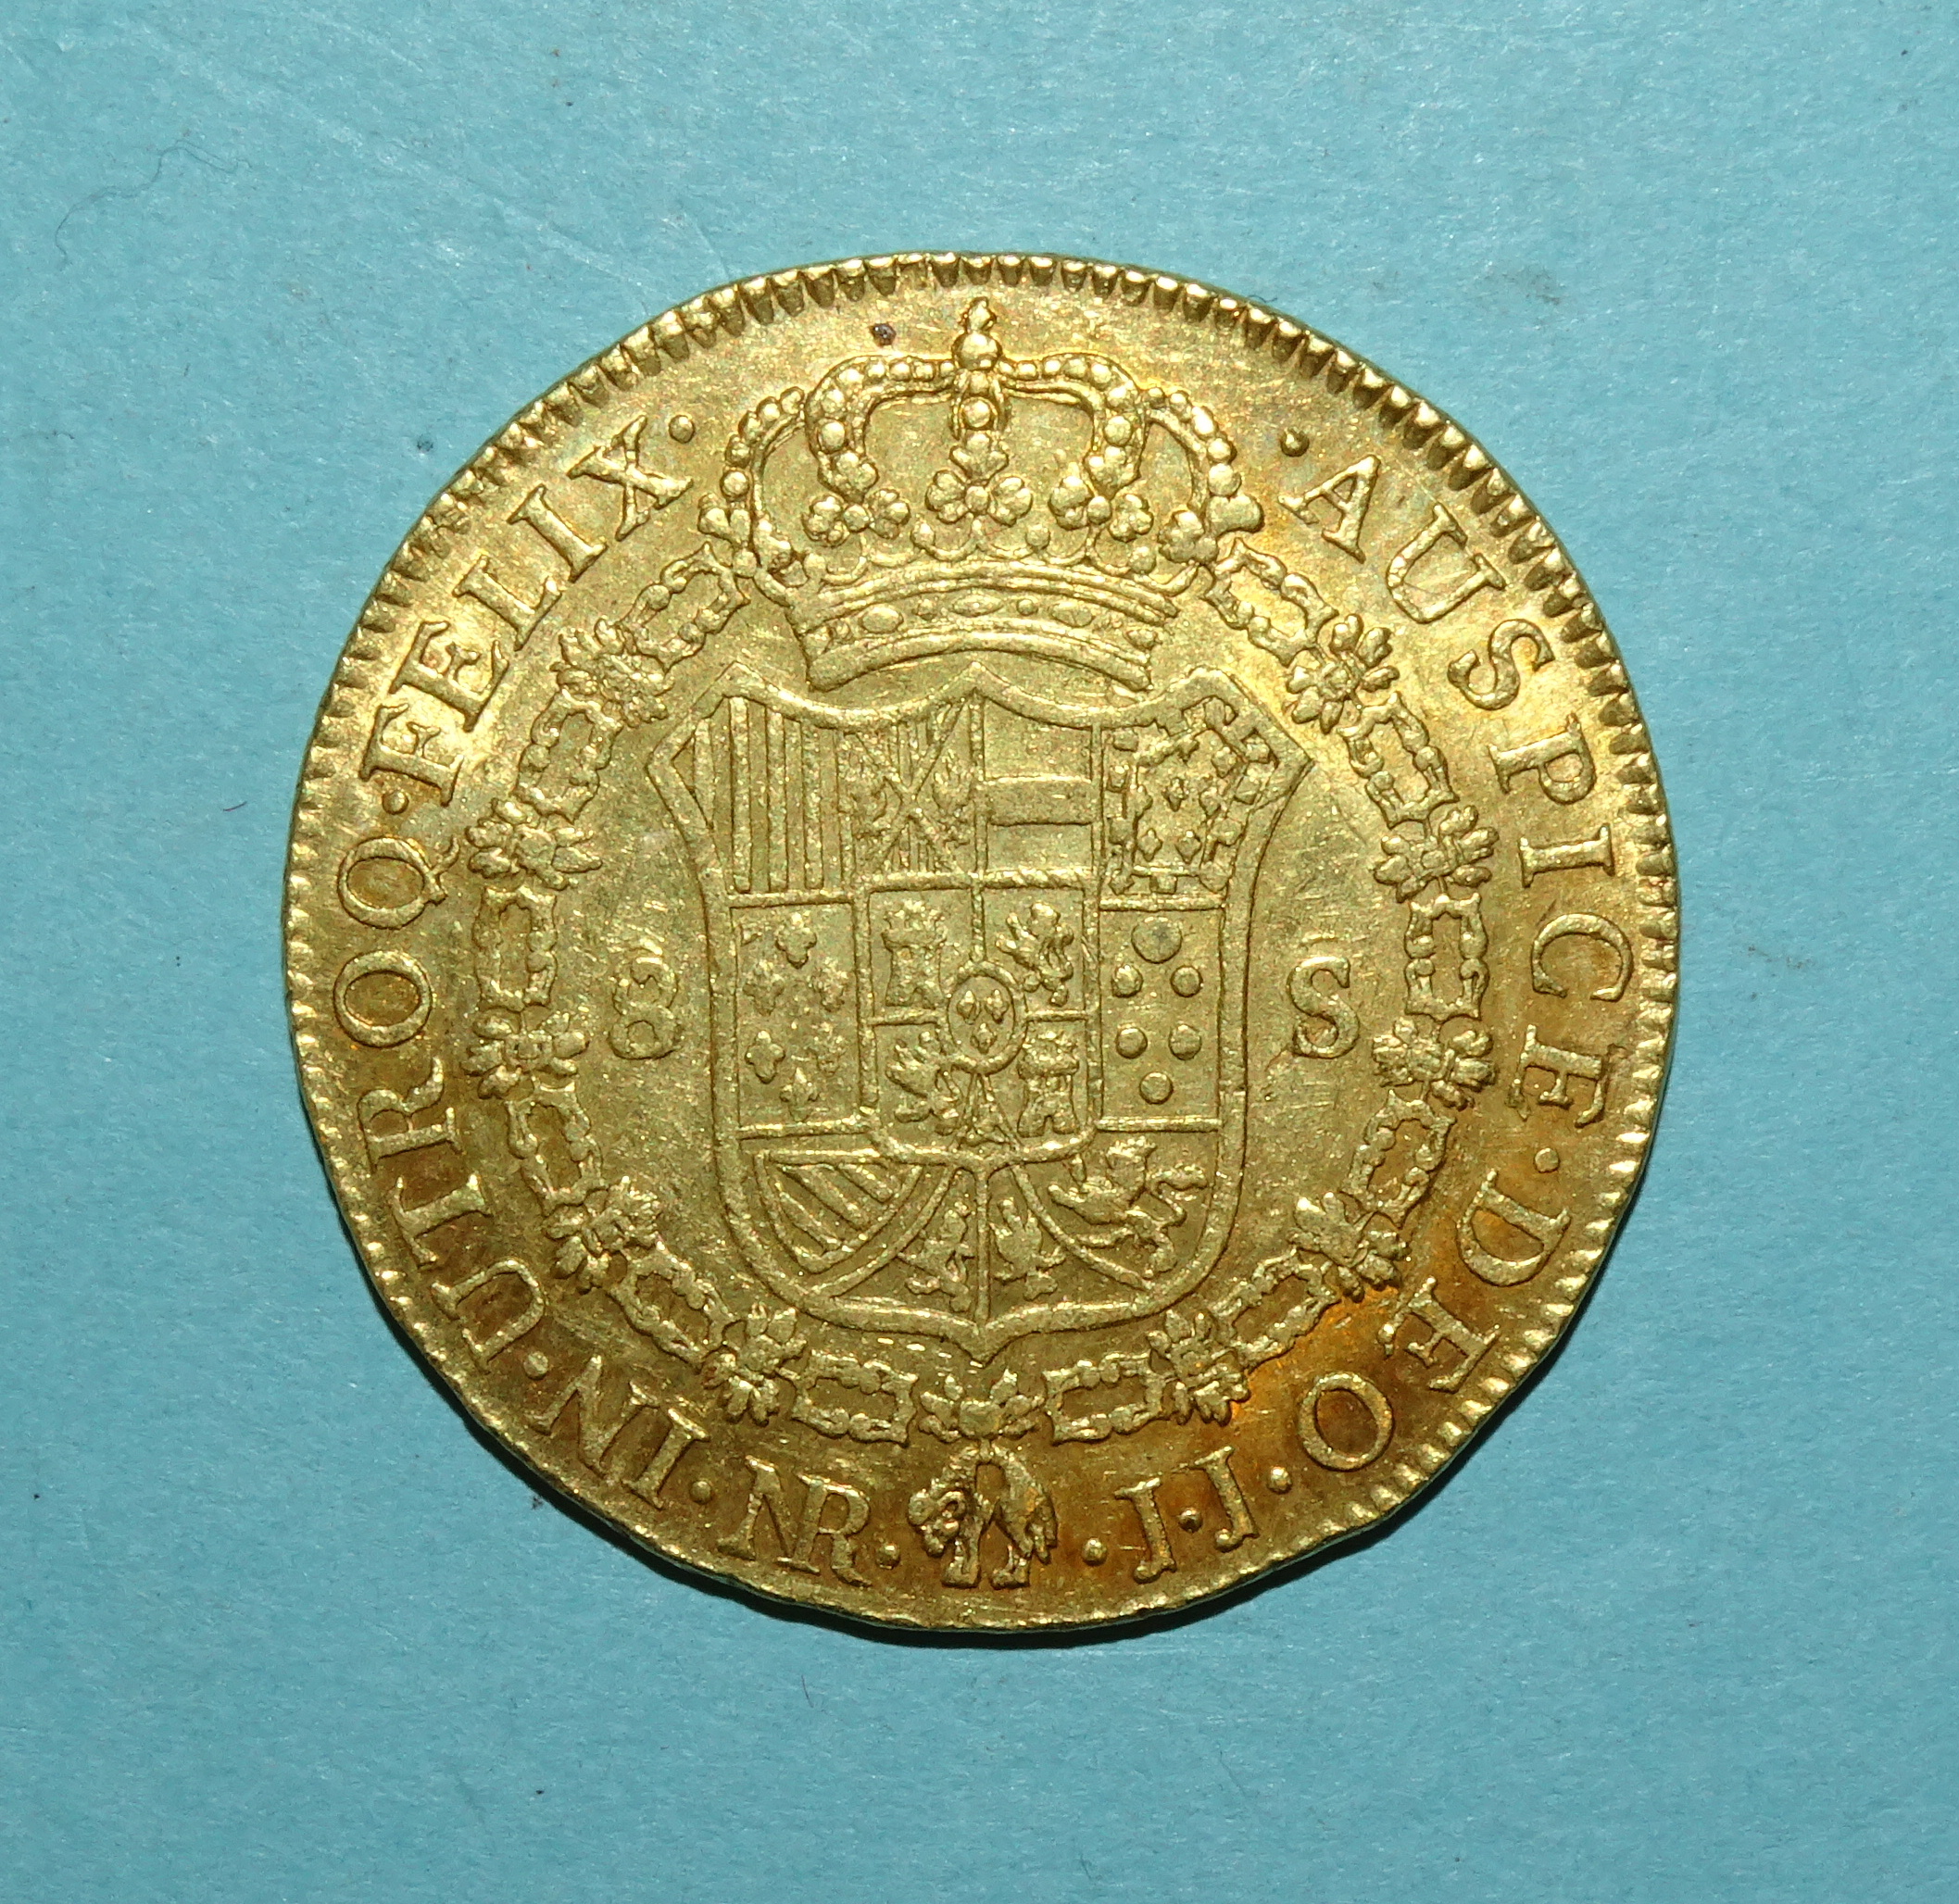 Columbia Charles IV gold 8-escudos 1805, Bogota Mint, 36mm diameter, 27g. - Bild 2 aus 2